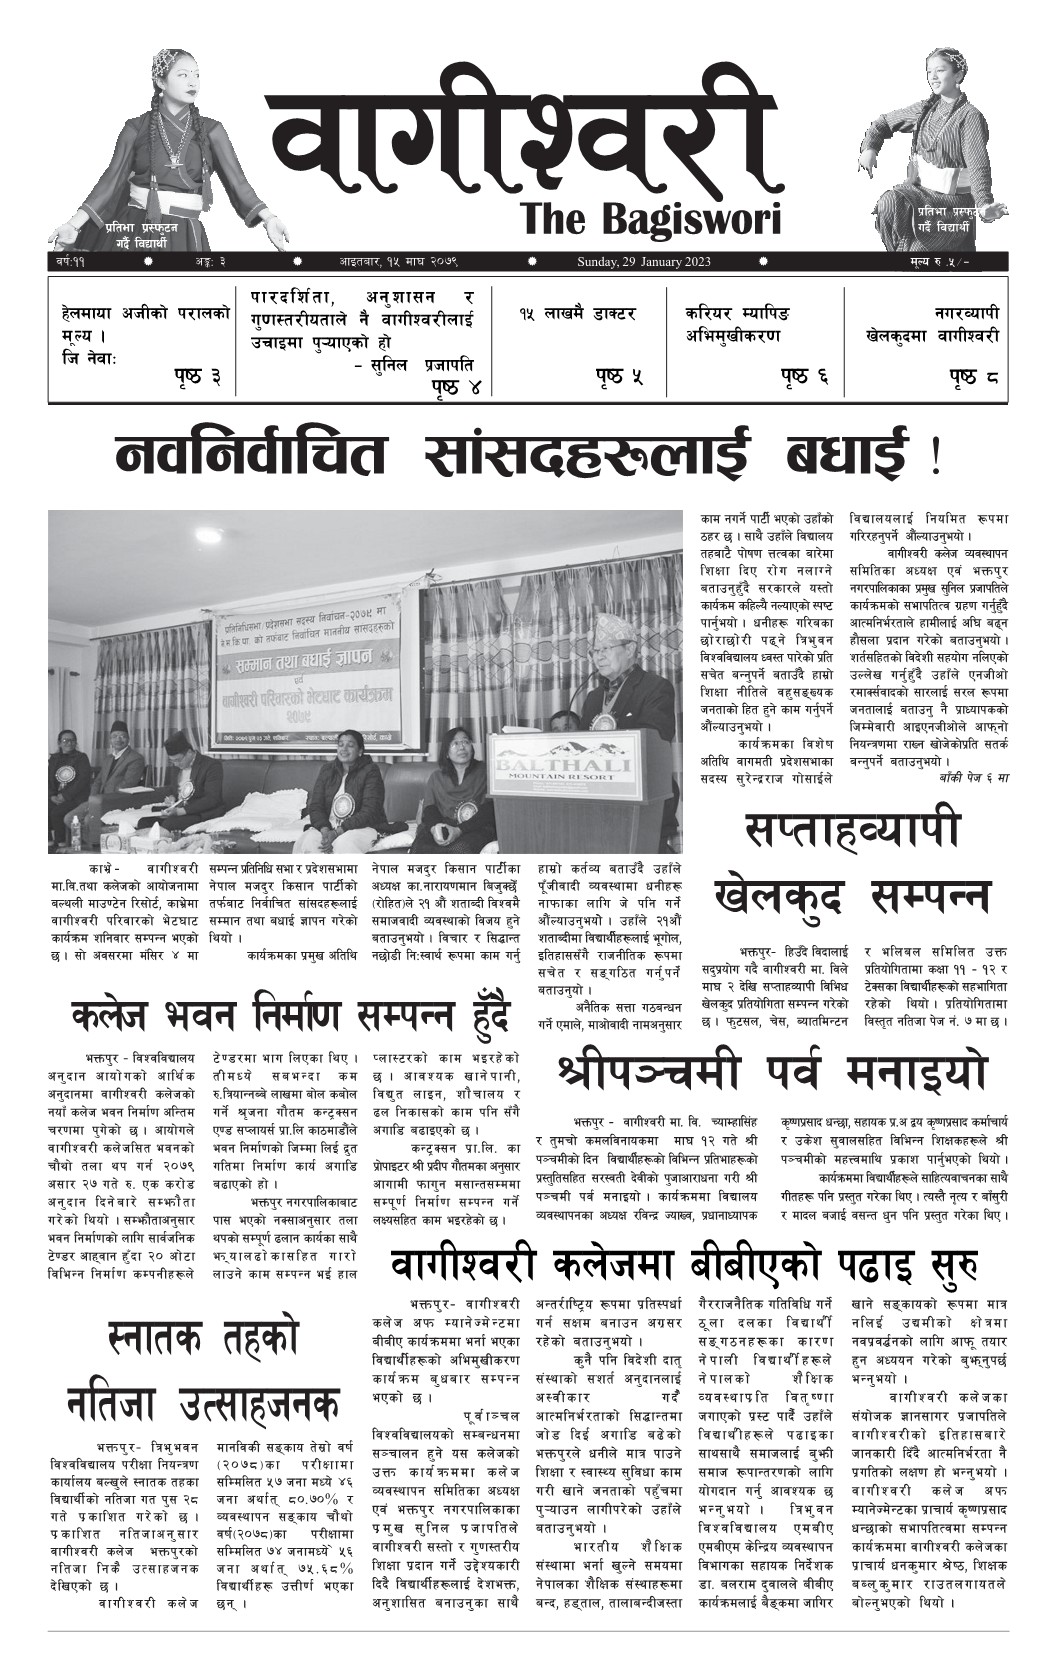 Bagiswori Newspaper Vol. 11 issue 3